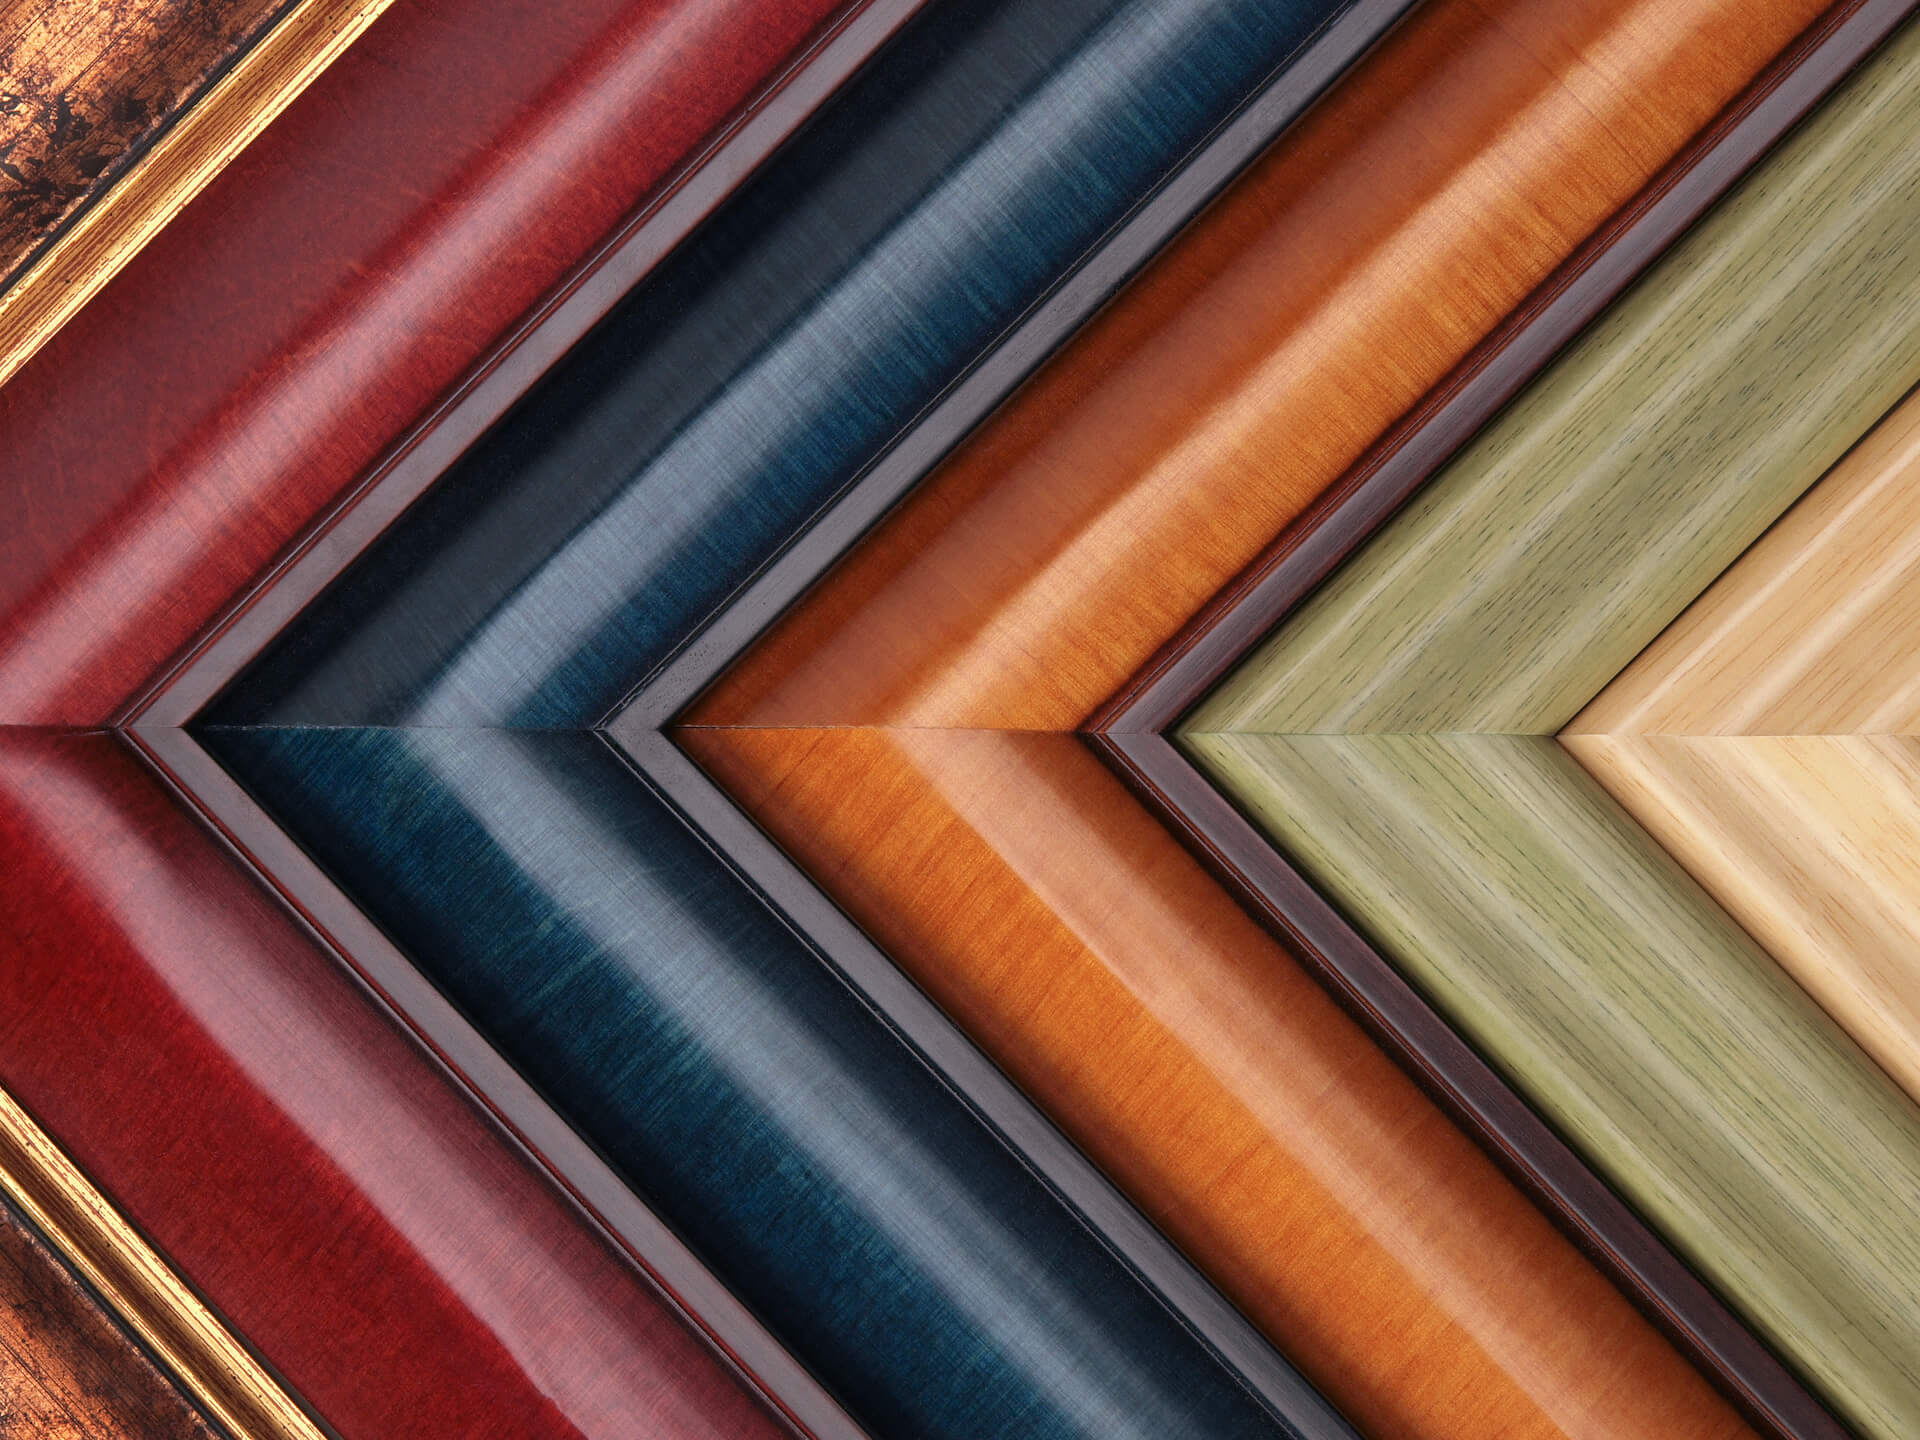 Edges of multiple colored wooden custom frames